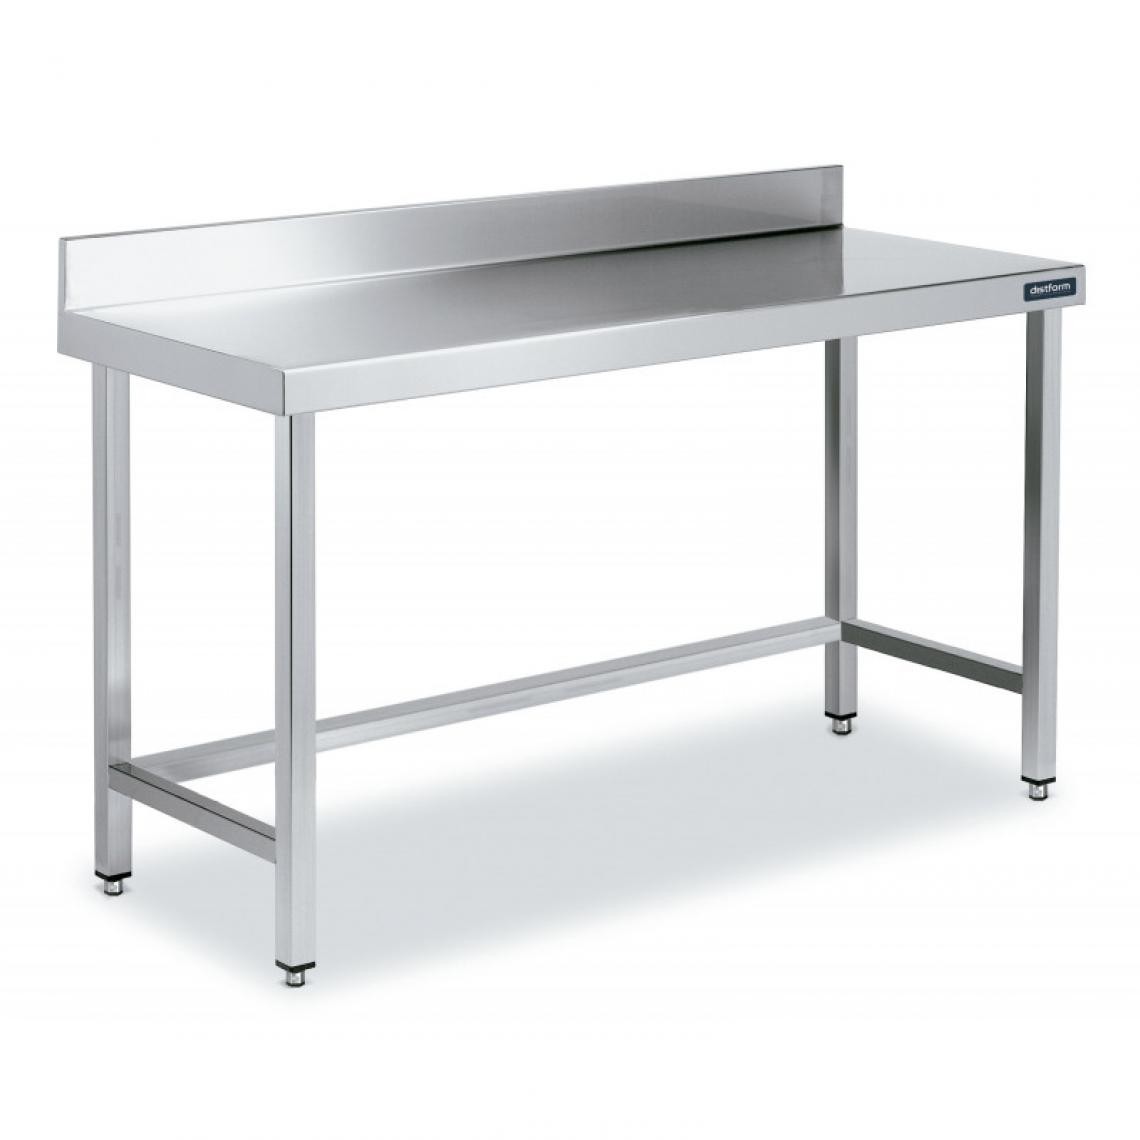 DISTFORM - Table Inox de Travail avec Dosseret Gamme 800 - Distform - Acier inoxydable700x800 - Tables à manger